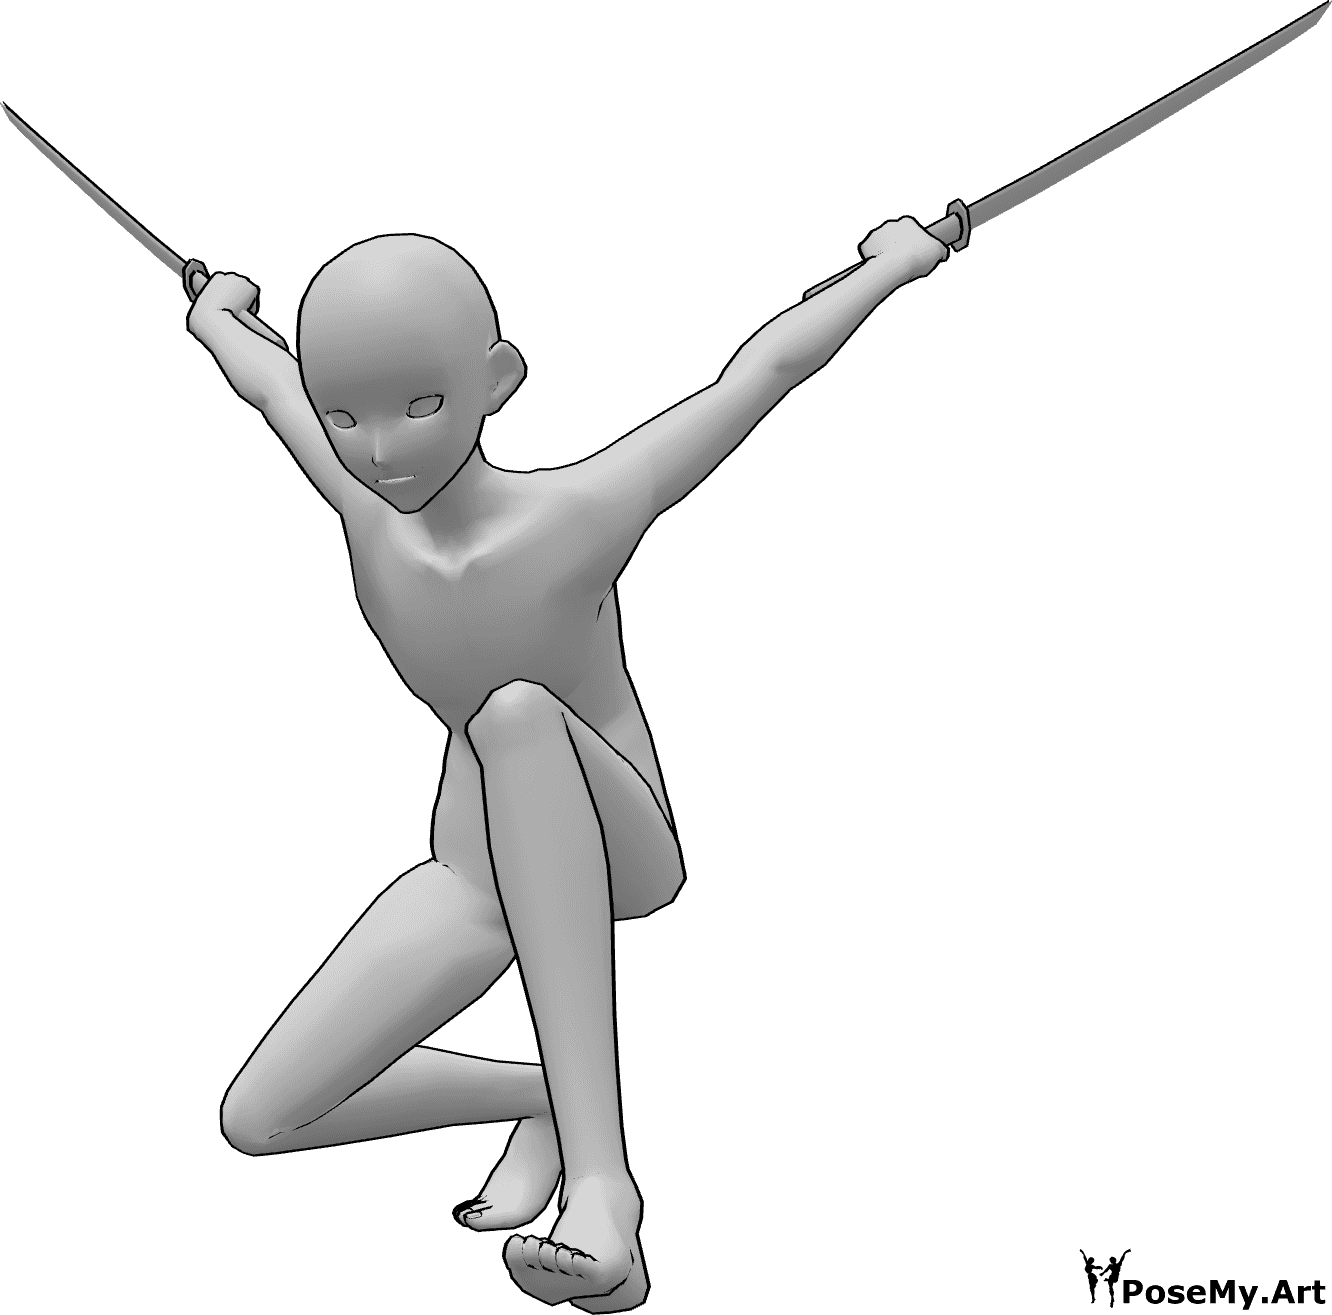 Posen-Referenz- Anime Ninja Landung Pose - Anime-Männchen landet auf dem Boden, hält Katanas in beiden Händen